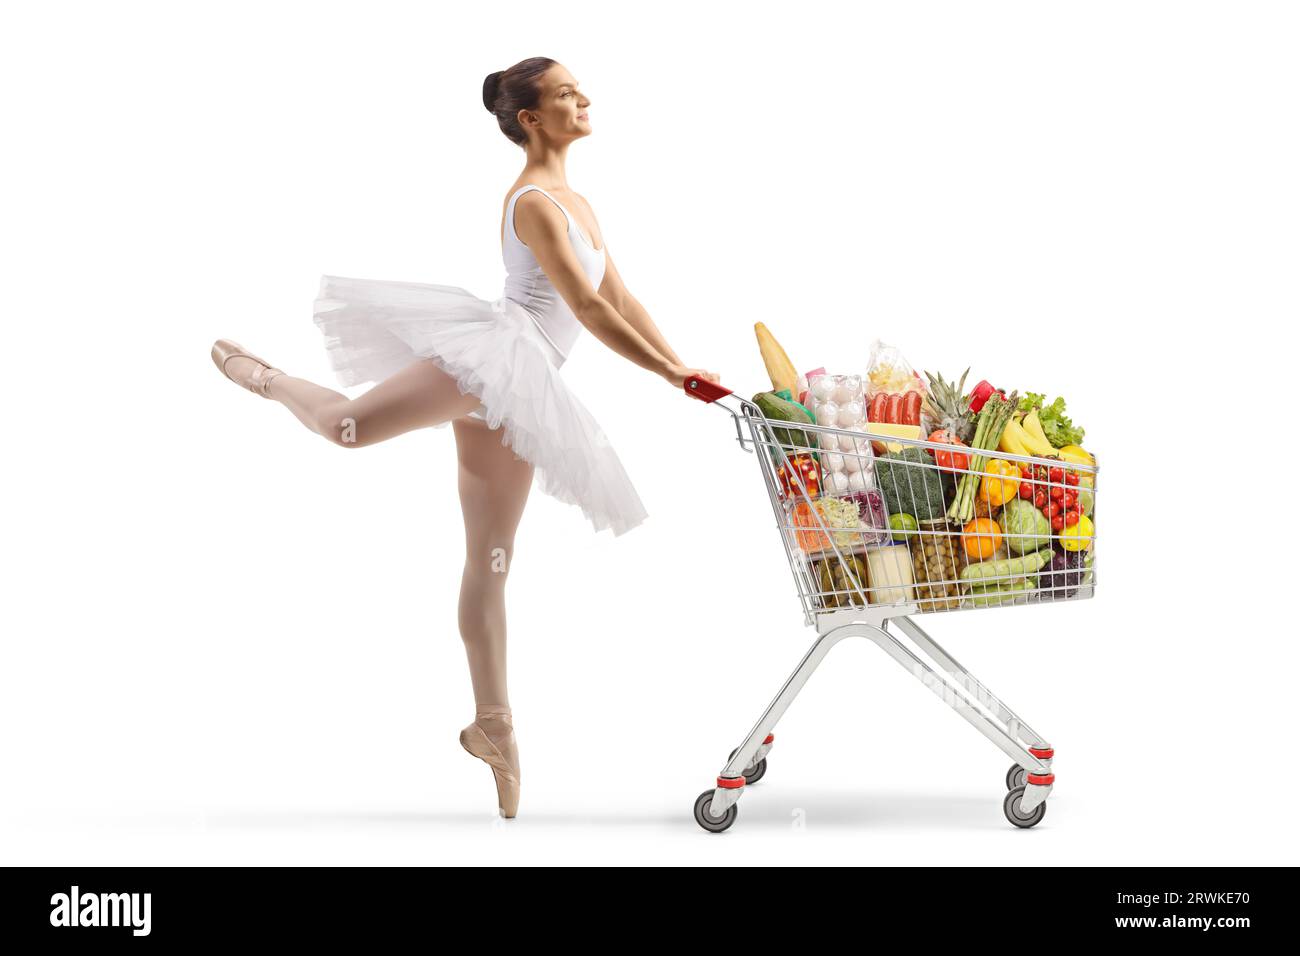 Profilaufnahme in voller Länge einer Ballerina, die tanzt und einen Einkaufswagen schiebt, mit Lebensmittelprodukten, die auf weißem Hintergrund isoliert sind Stockfoto